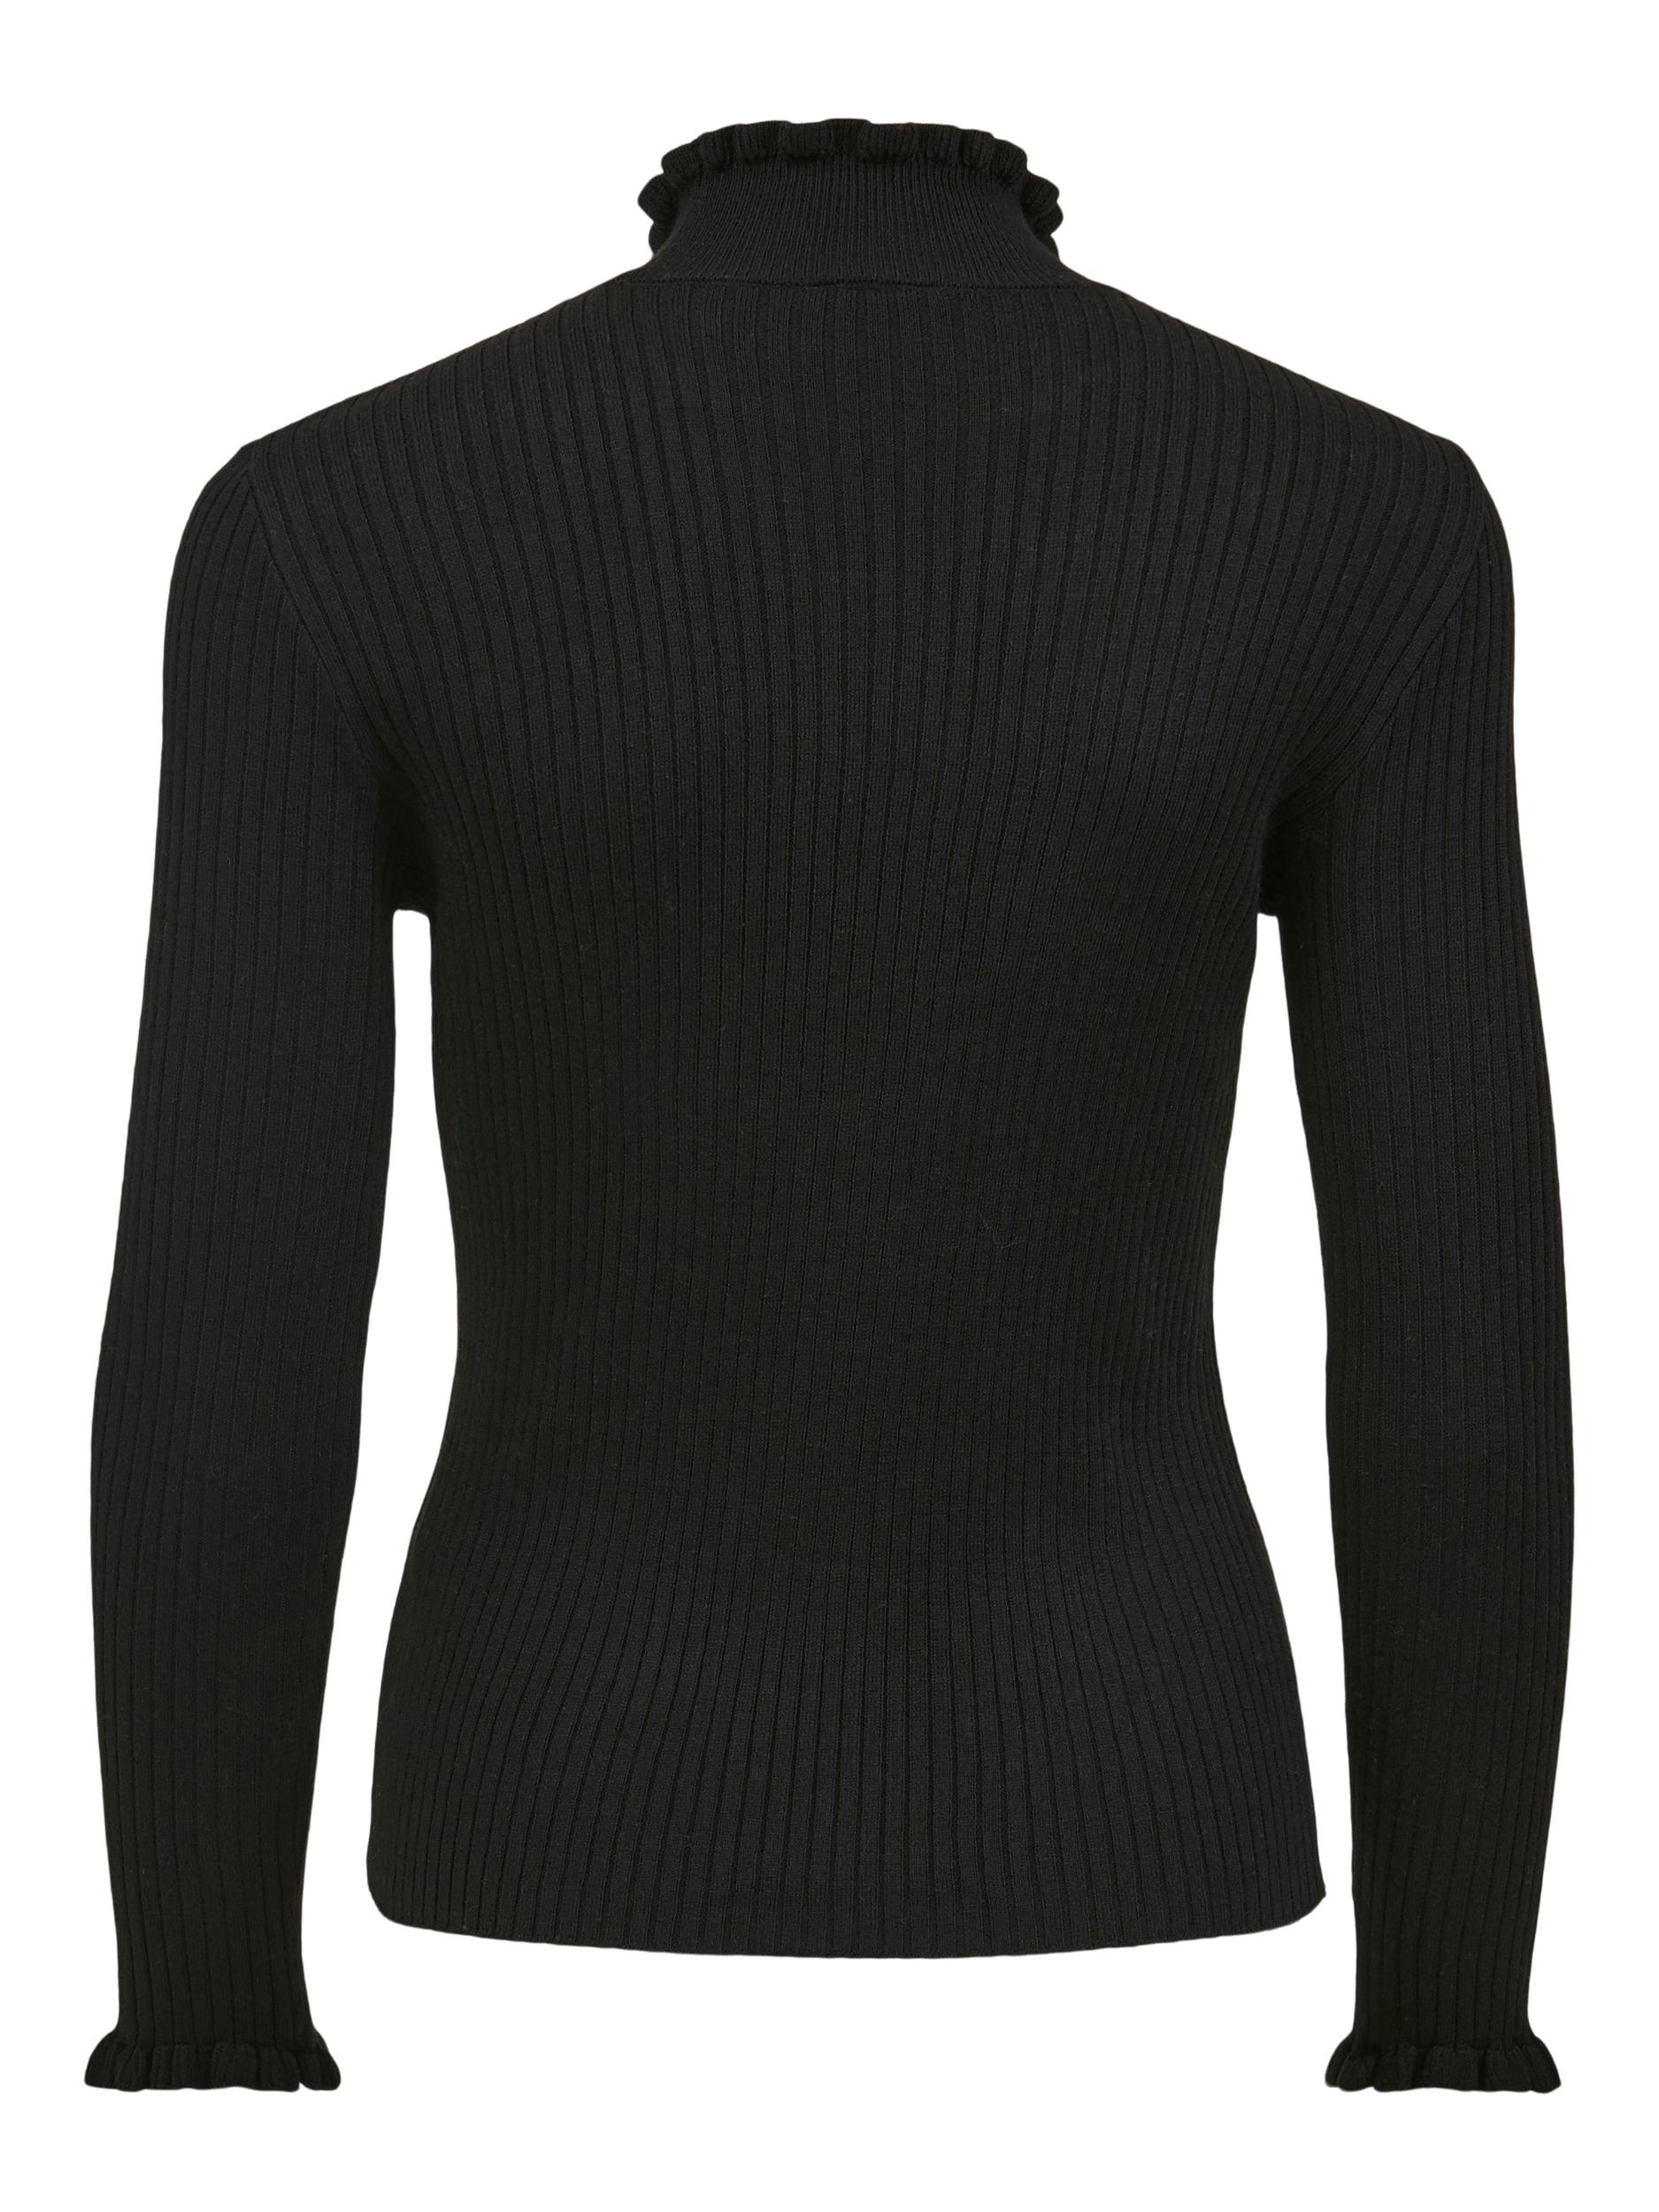 Swetry & dzianina bUXoS VILA Sweter w kolorze Czarnym 